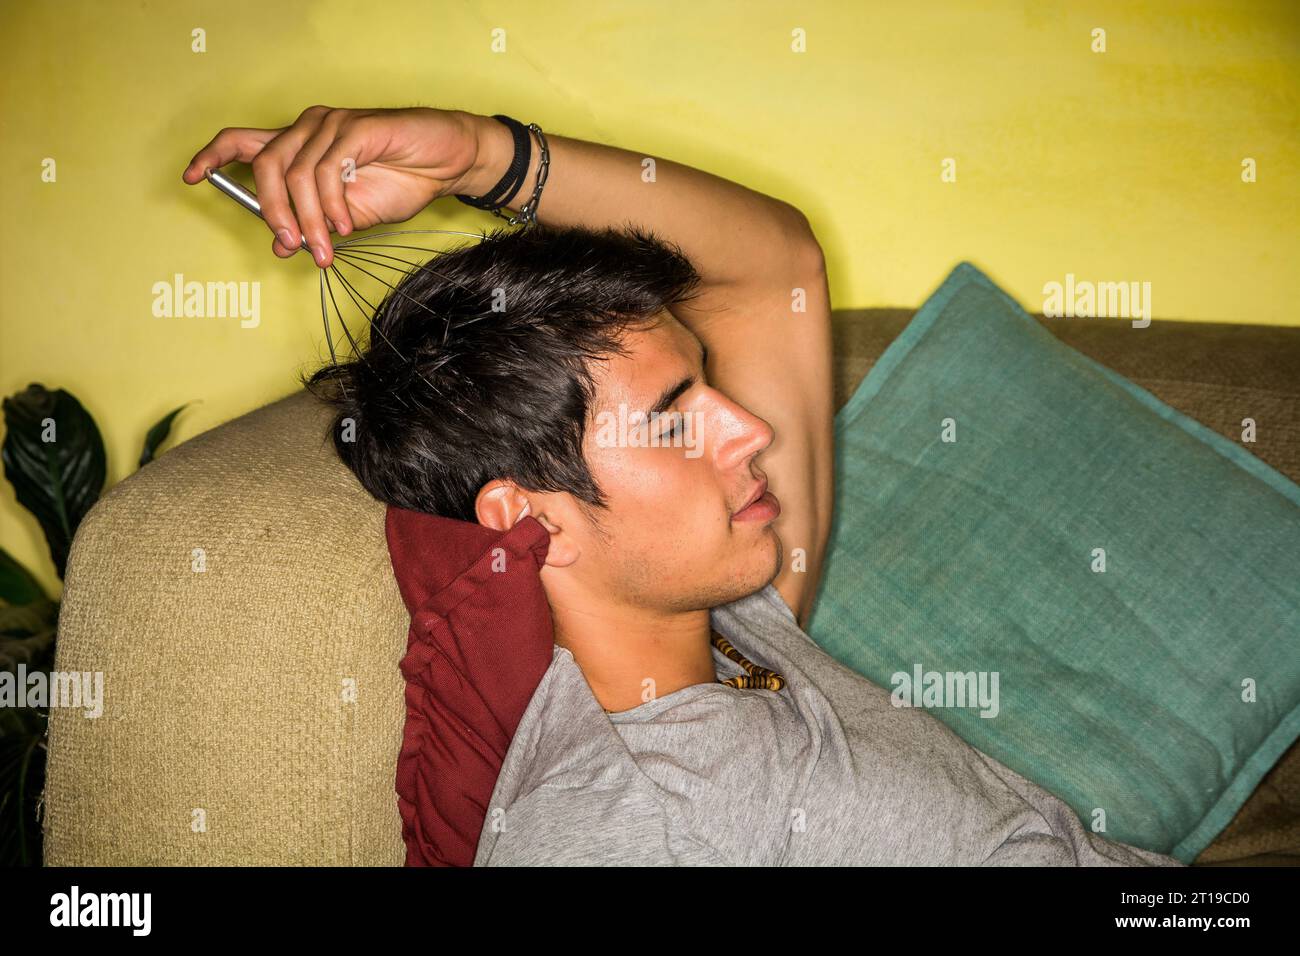 Un homme allongé sur un canapé avec un masseur de tête dans sa main.photo d'un jeune et bel homme se détendant sur un canapé avec un masseur de tête en main Banque D'Images